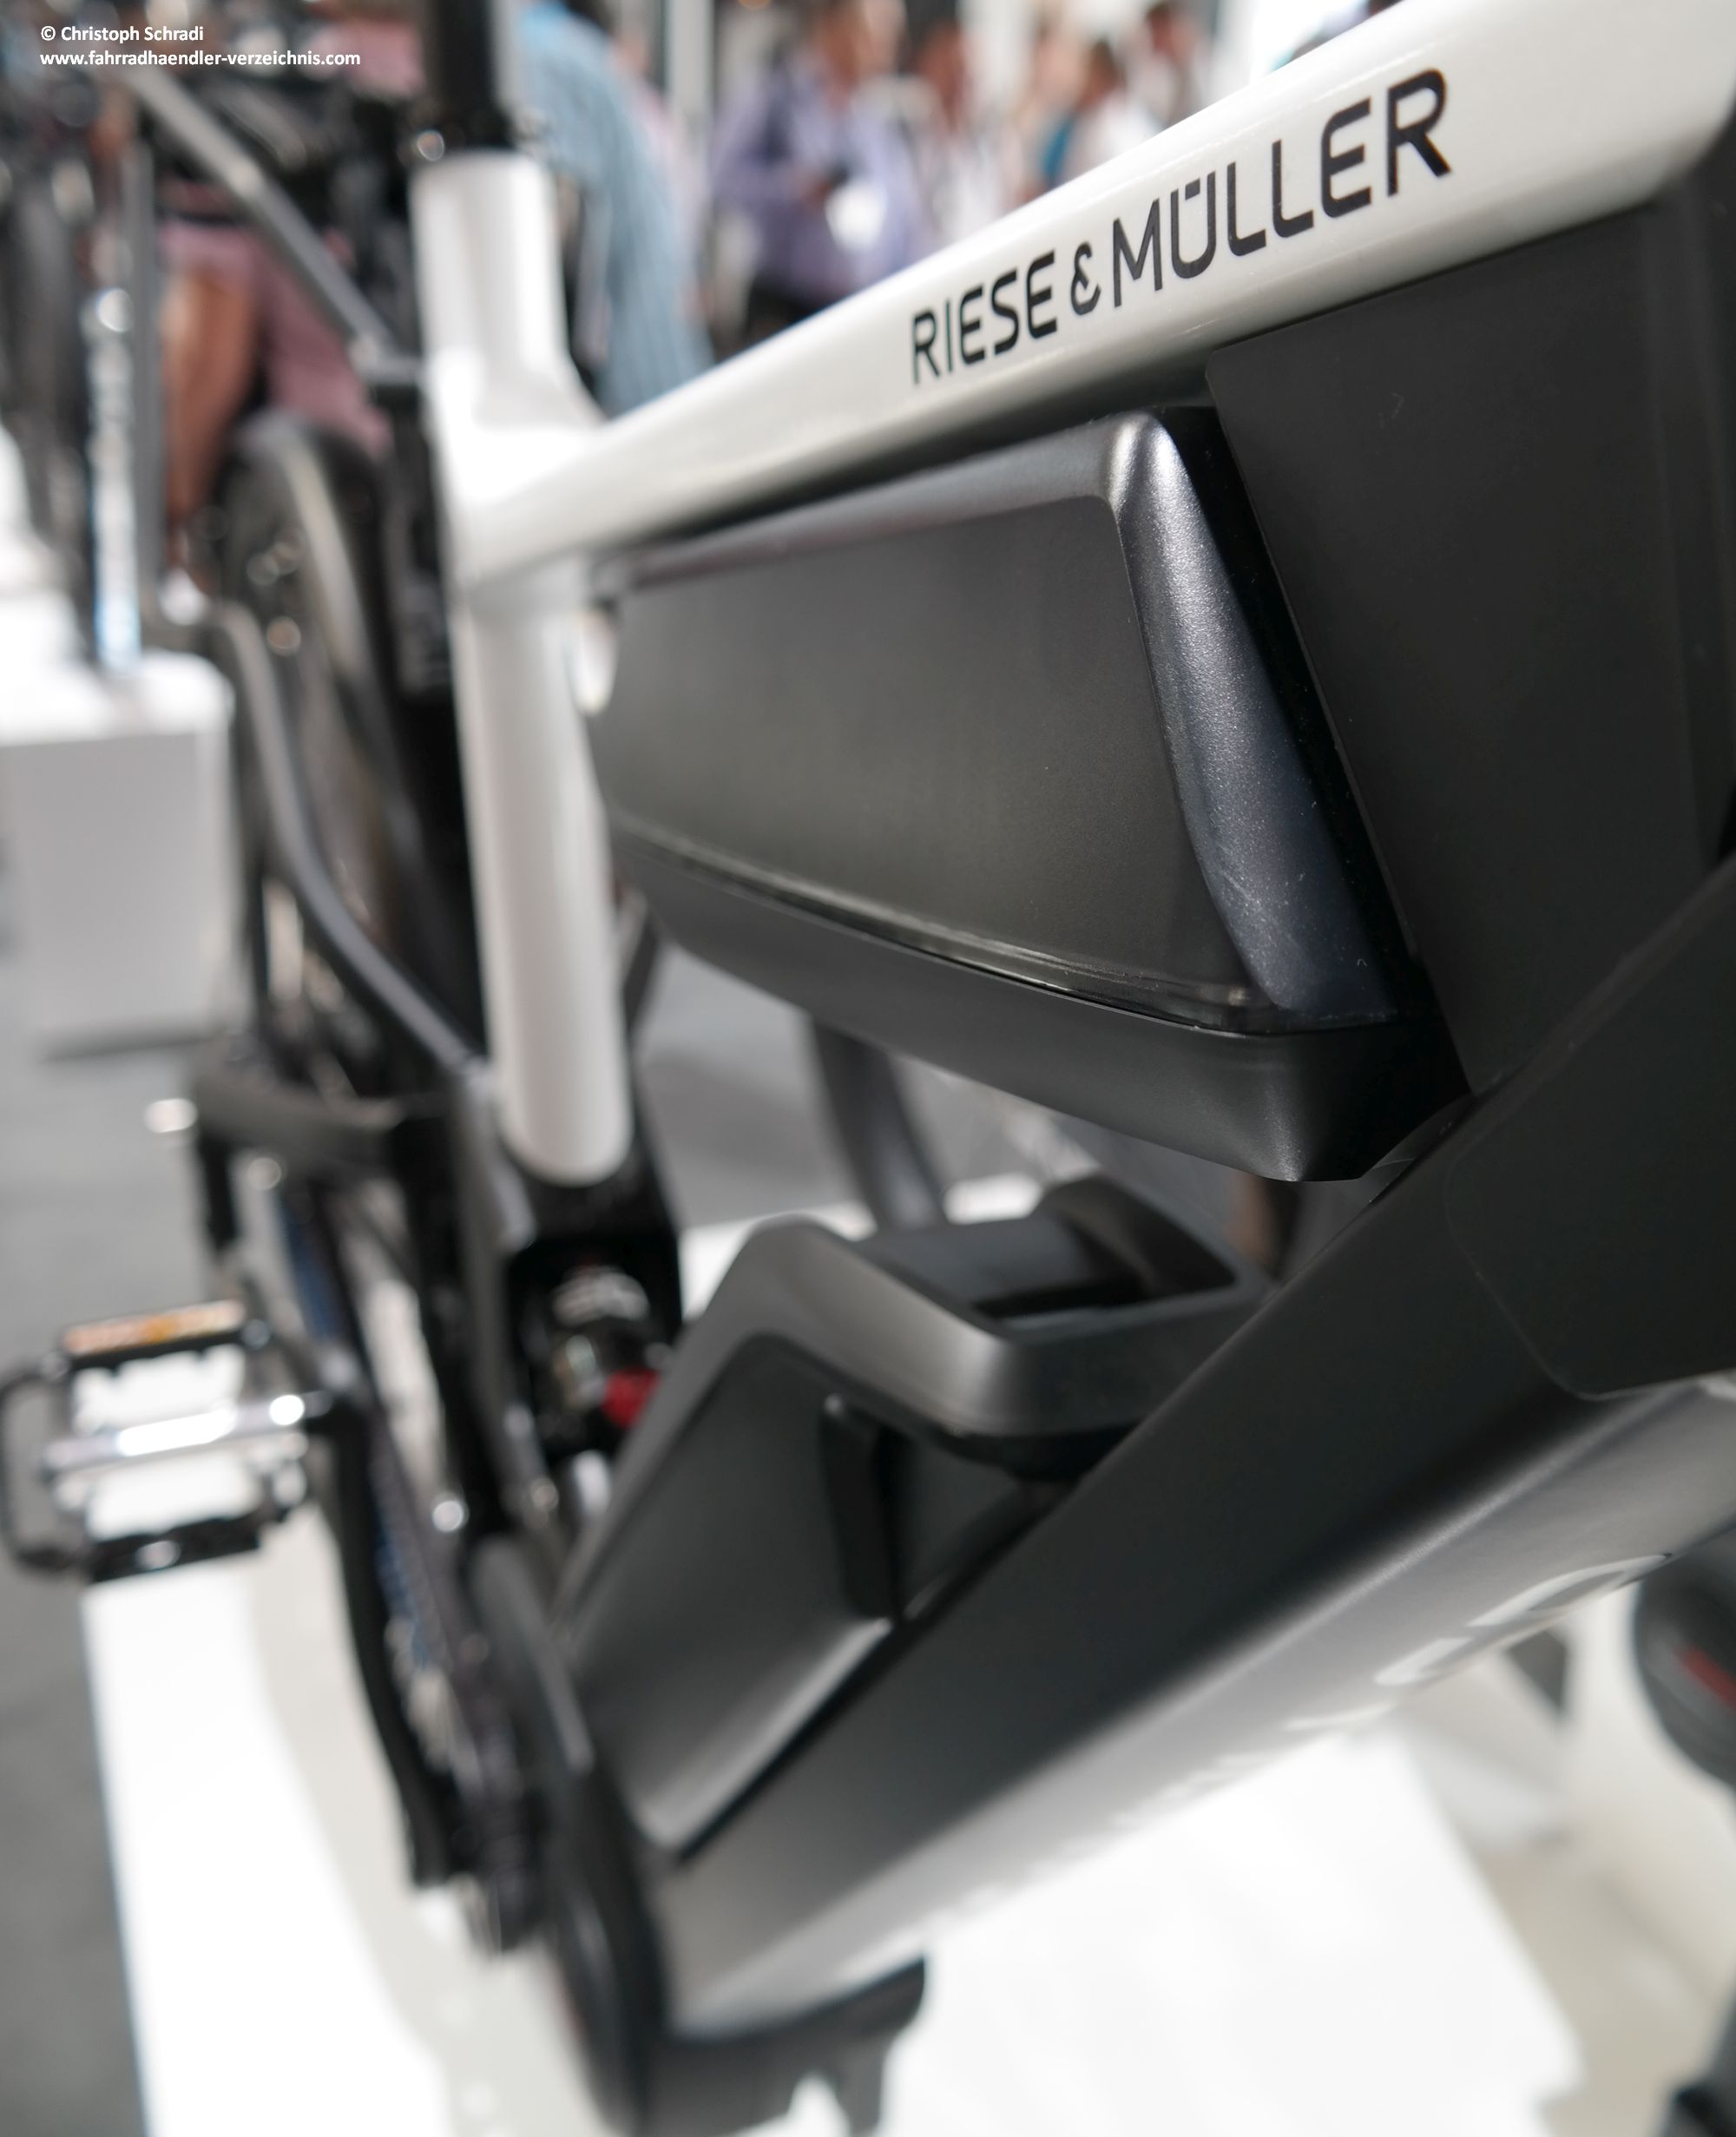 Riese und Müller - ein Premium Hersteller aus Weiterstadt - welcher sich seit einigen Jahren nahezu ausschließlich auf das Thema E-Bike und E-Mobilität konzentriert